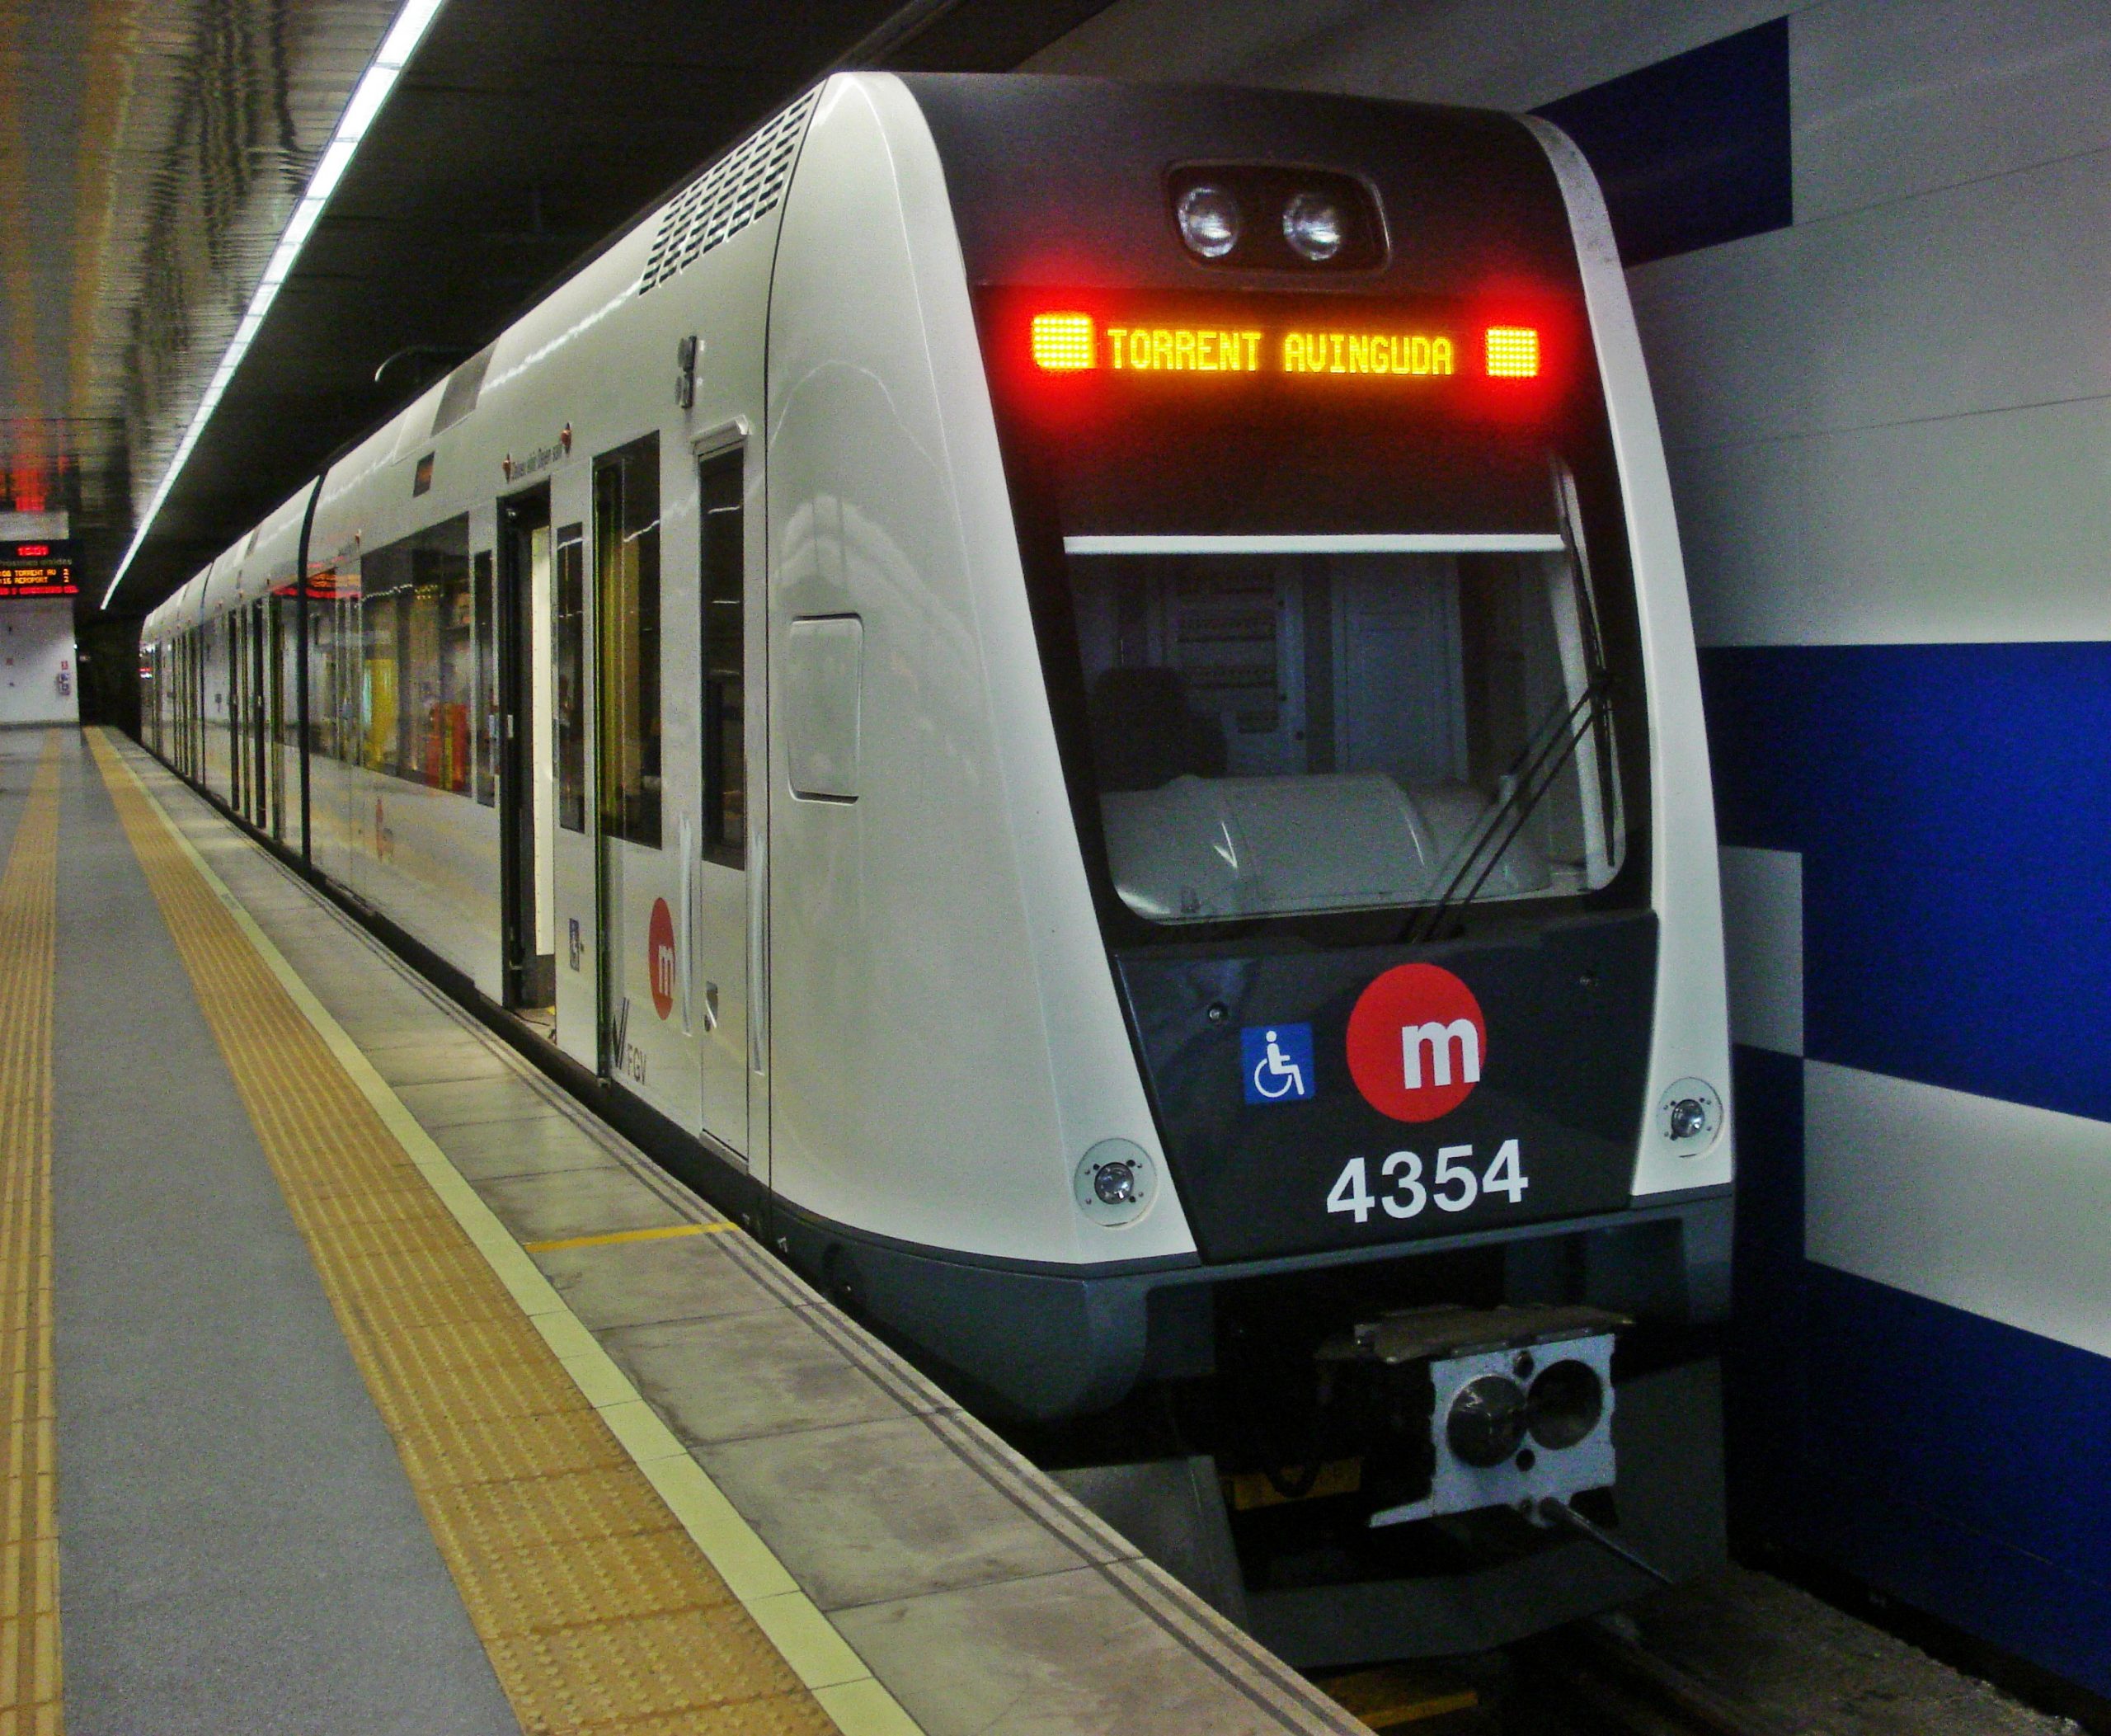 Metrovalencia Train